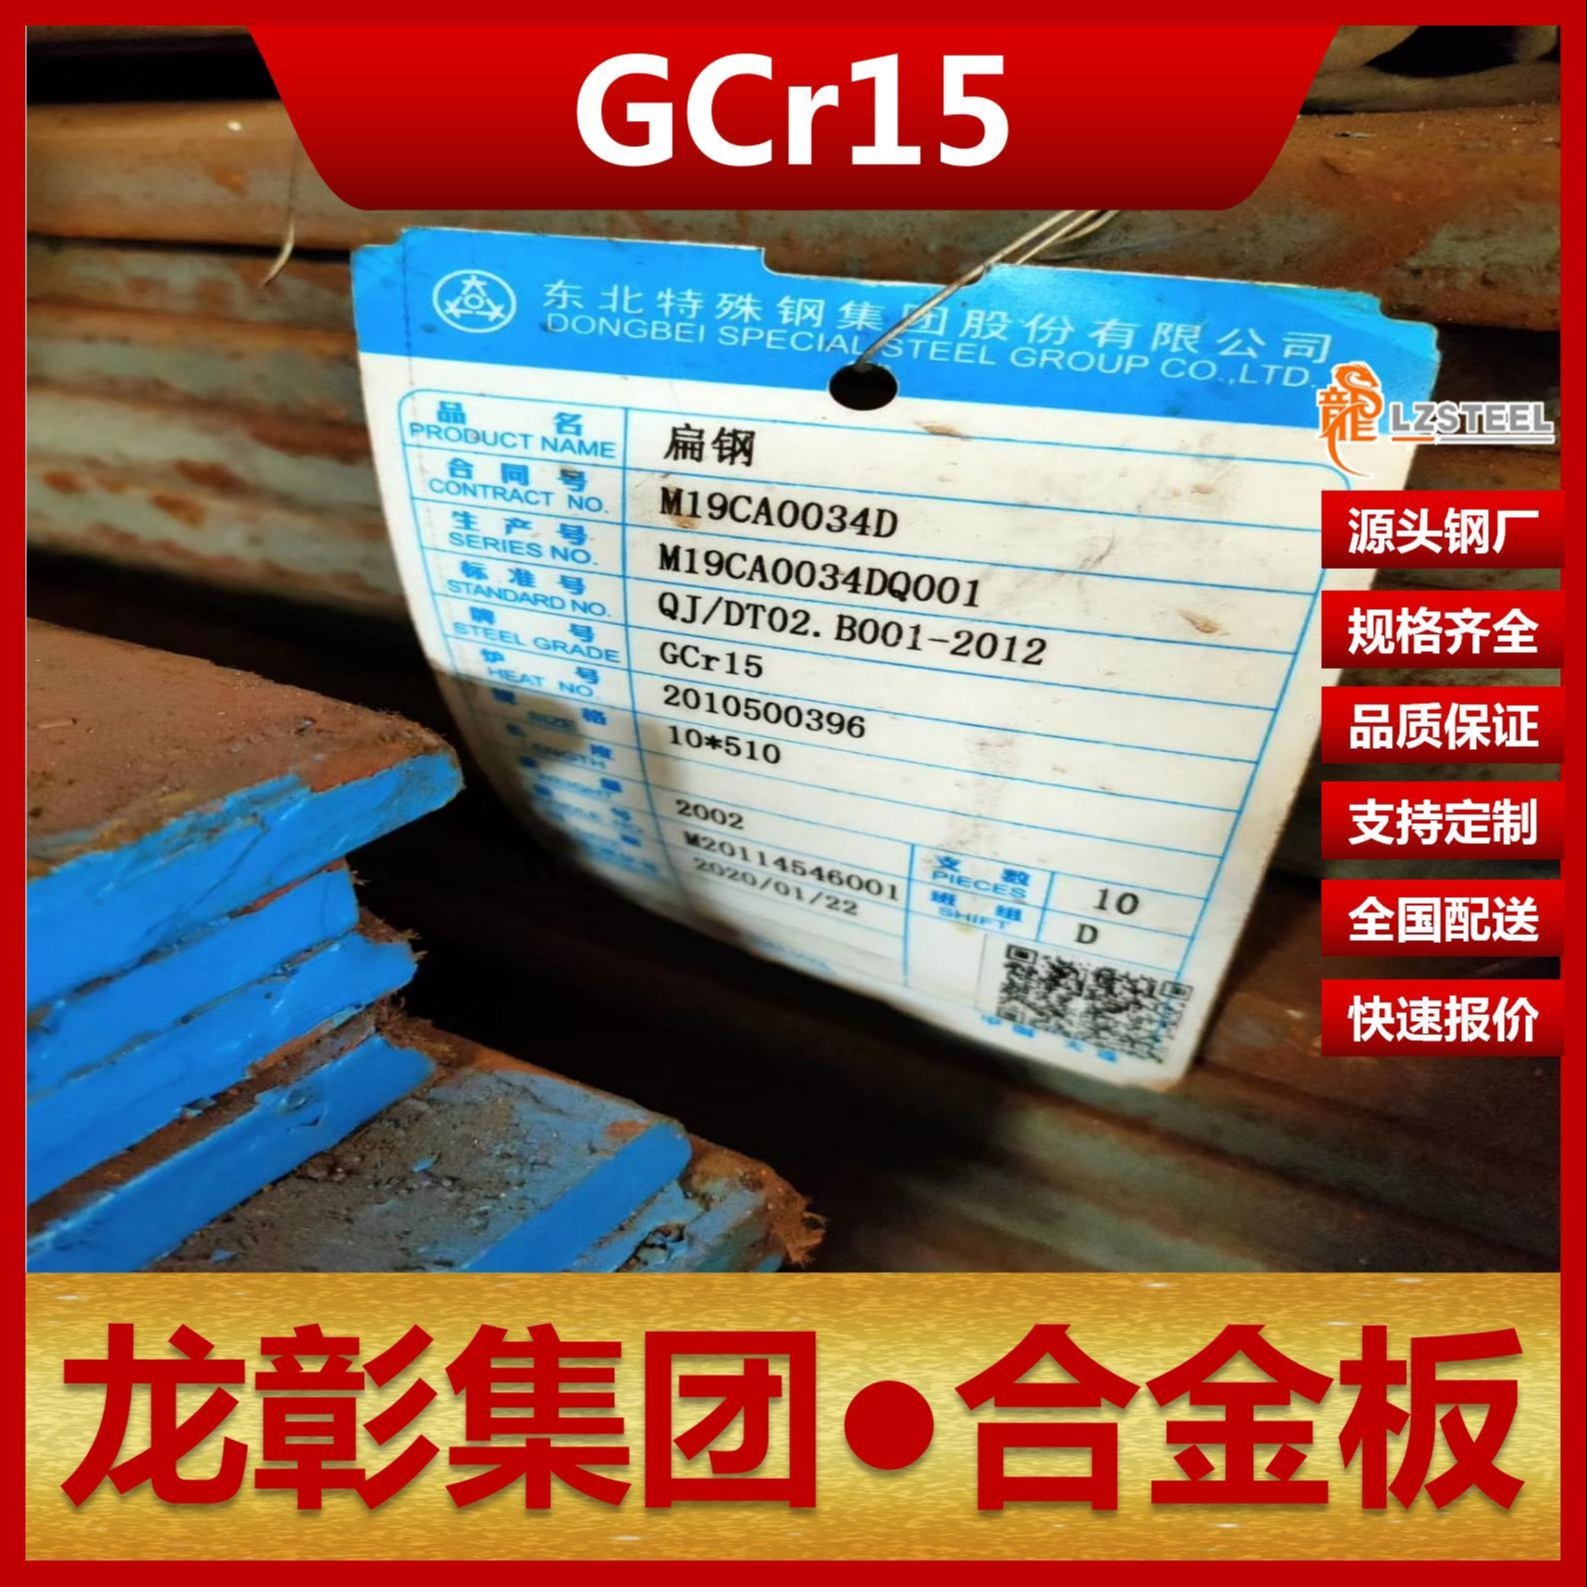 GCr15钢板现货批零 龙彰集团主营GCr15合金板卷材可开平分条